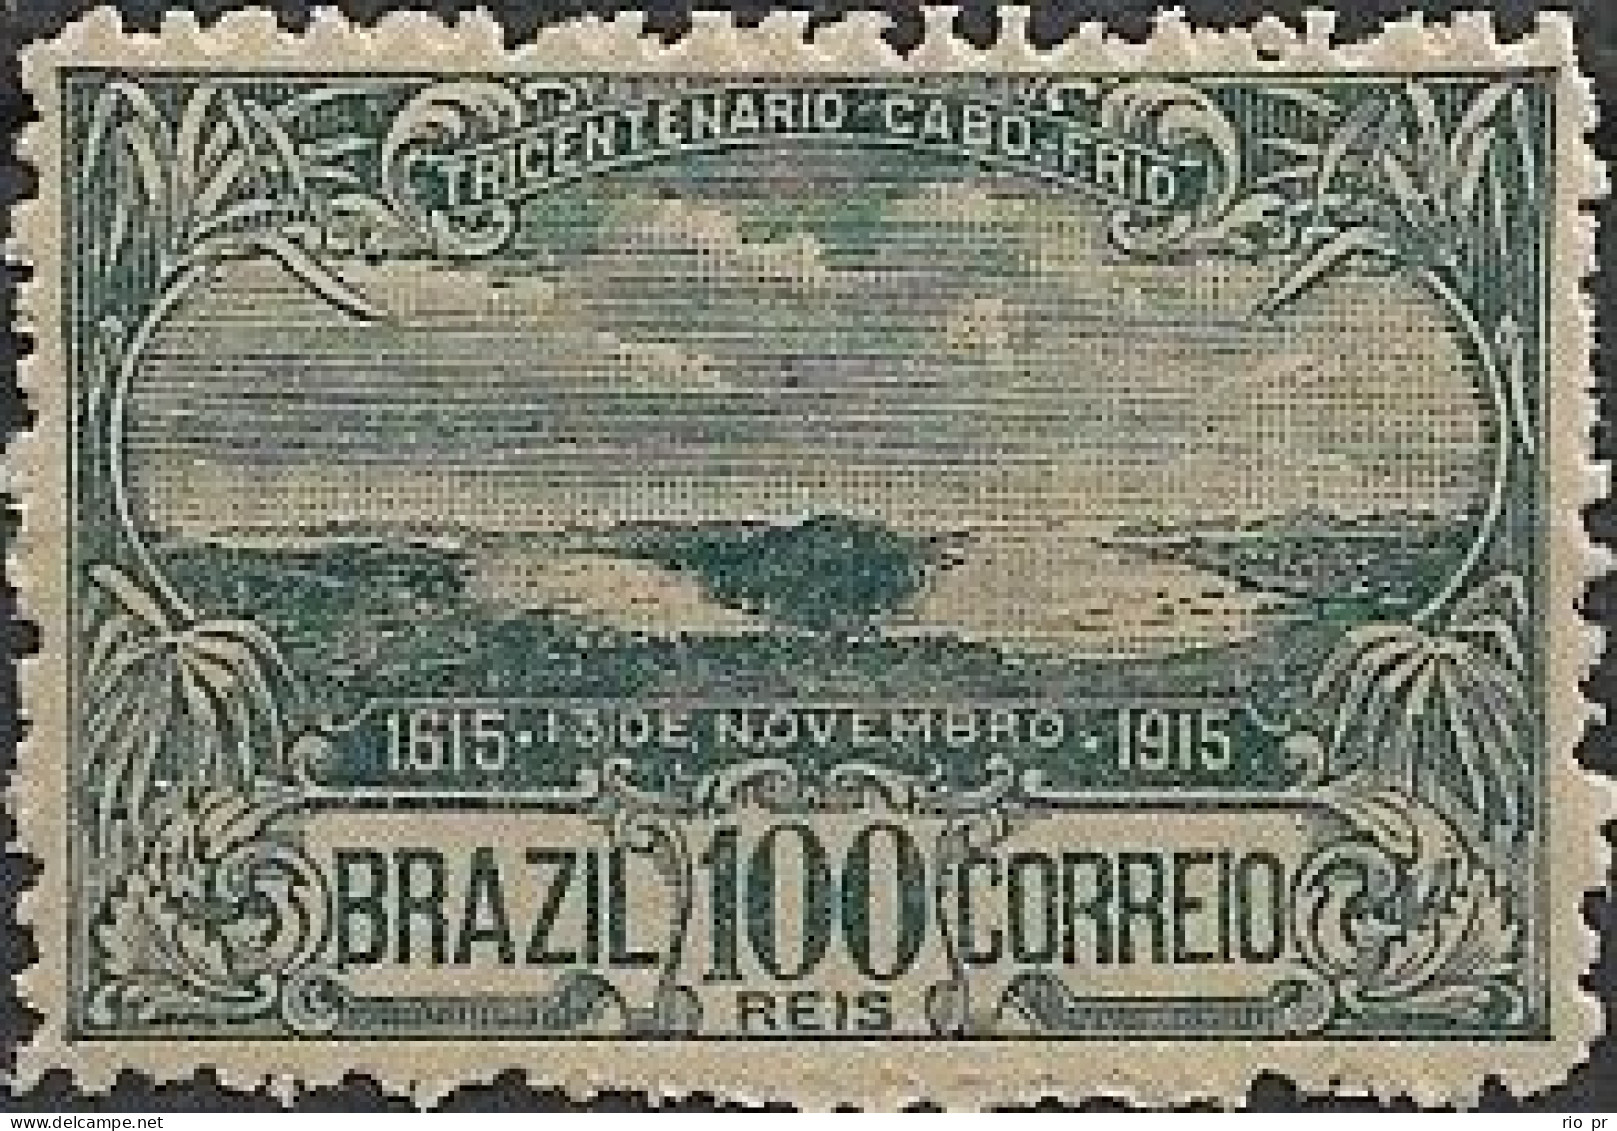 BRAZIL - 3rd CENTENARY OF THE CITY OF CABO FRIO/RJ 1915 - MNH - Nuovi